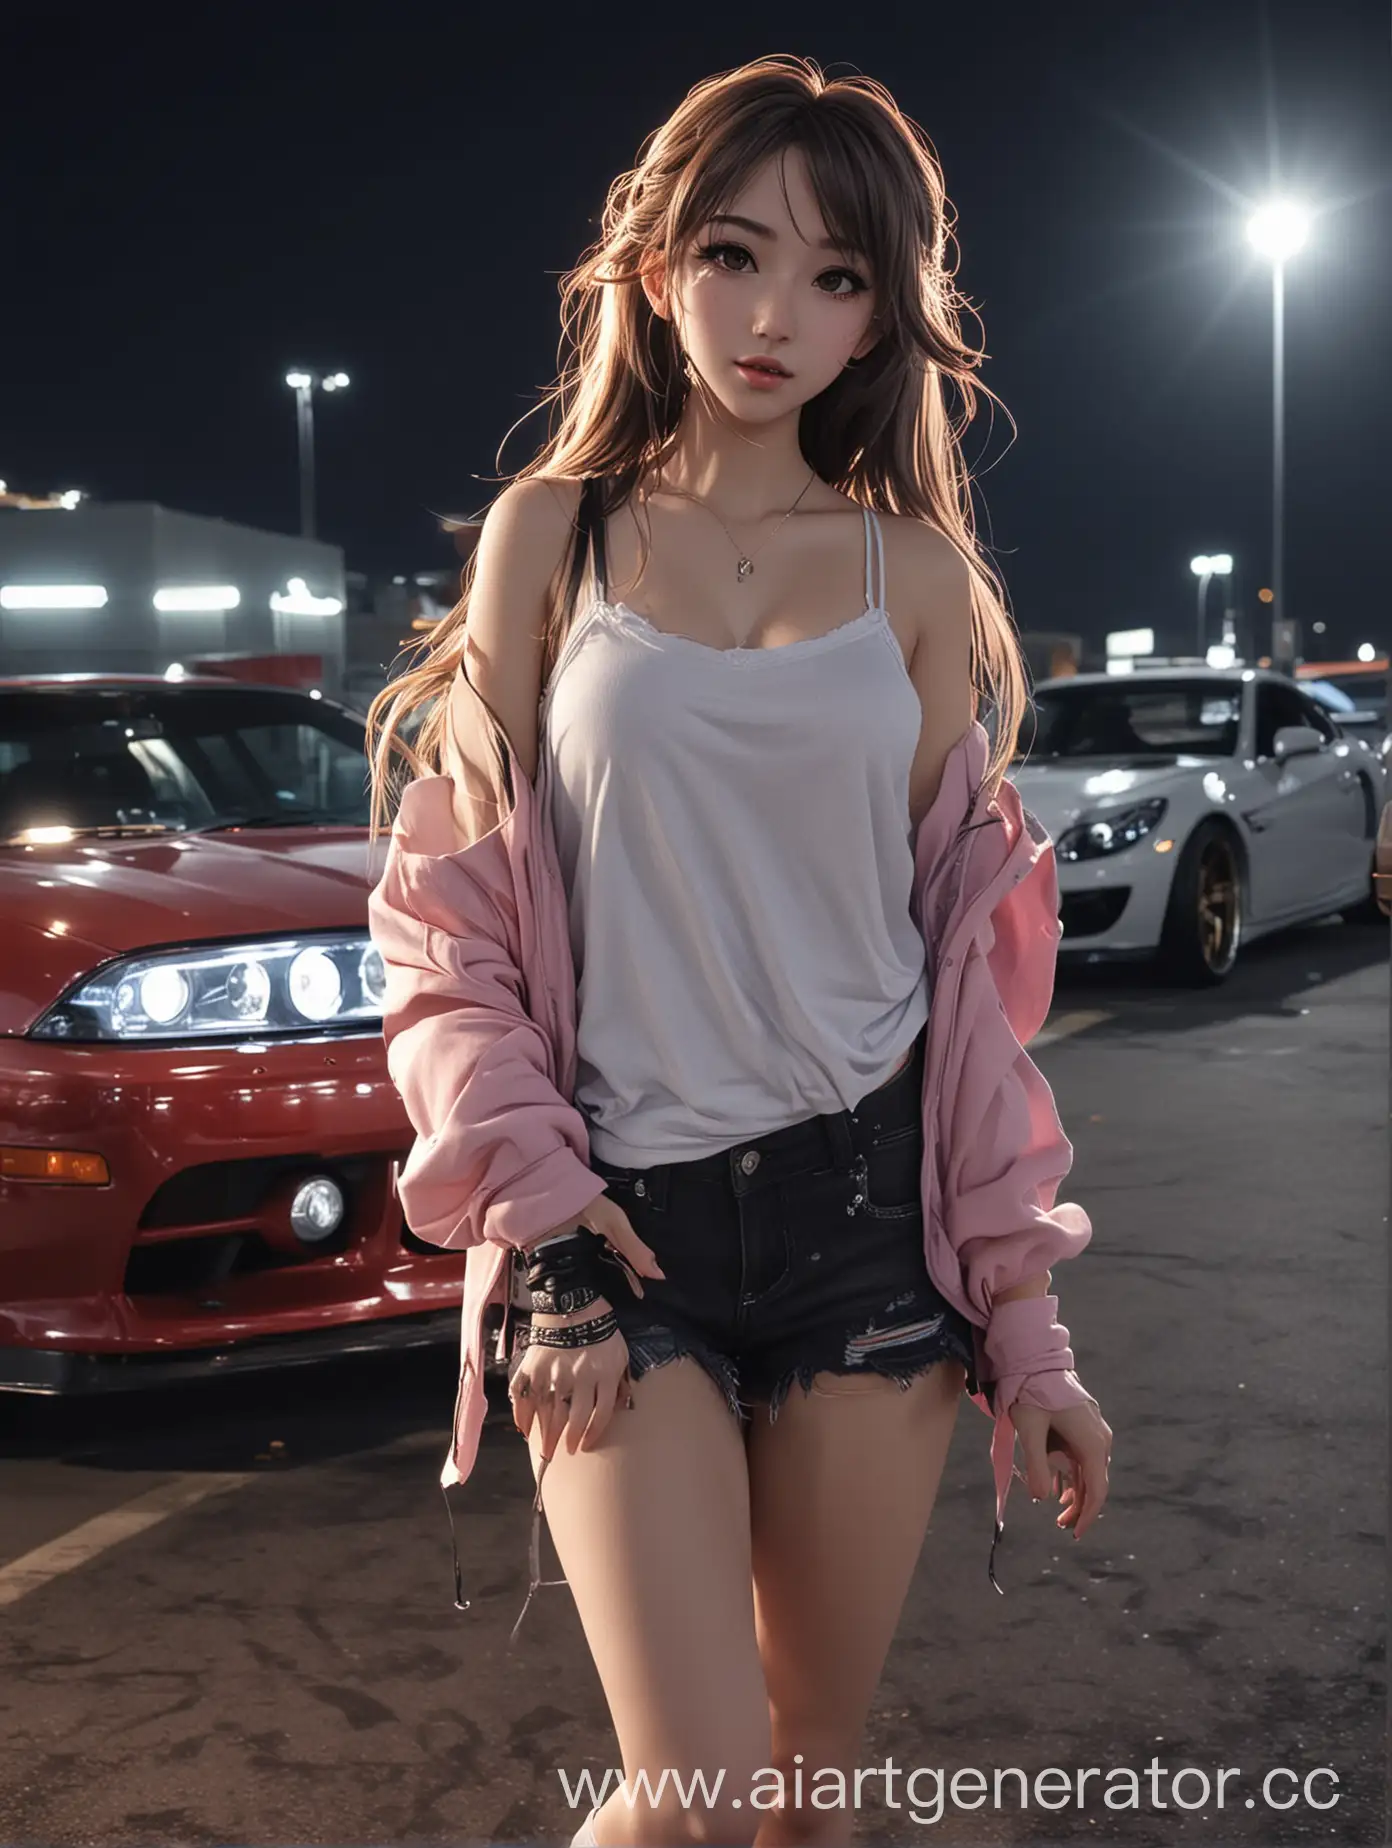 Аниме девушка, круто одета, с красивой внешностью, танцует на парковке ночью, а сзади неё красивые тачки для дрифта с крутым тюнингом.